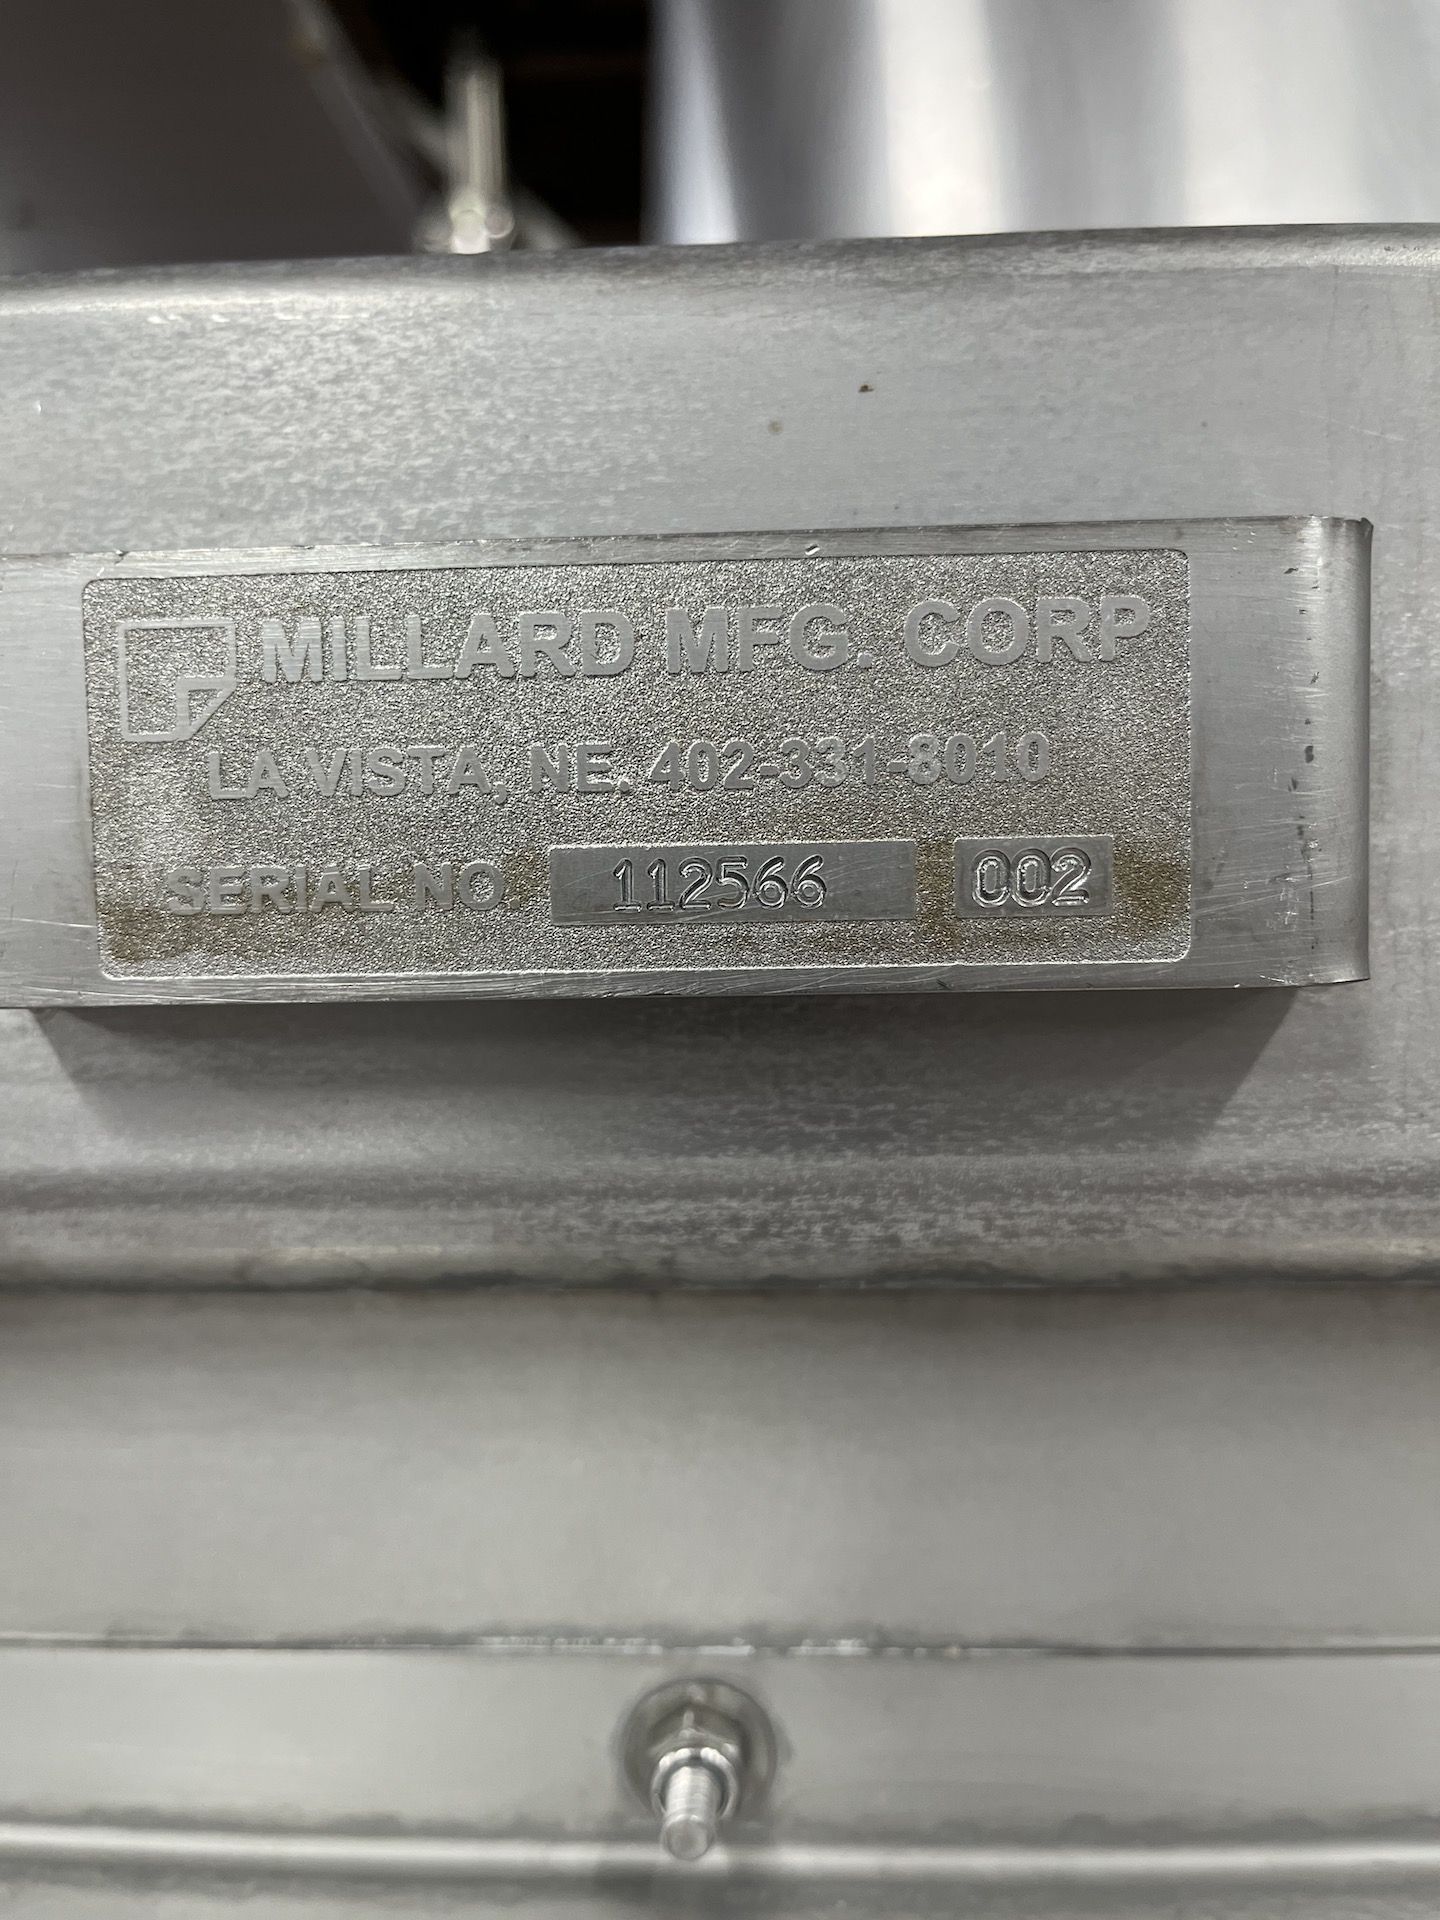 MILLARD MFG CORP TILTING ROTARY SEASONING DRUM, S/N 112566, MODEL 002 - Image 6 of 8